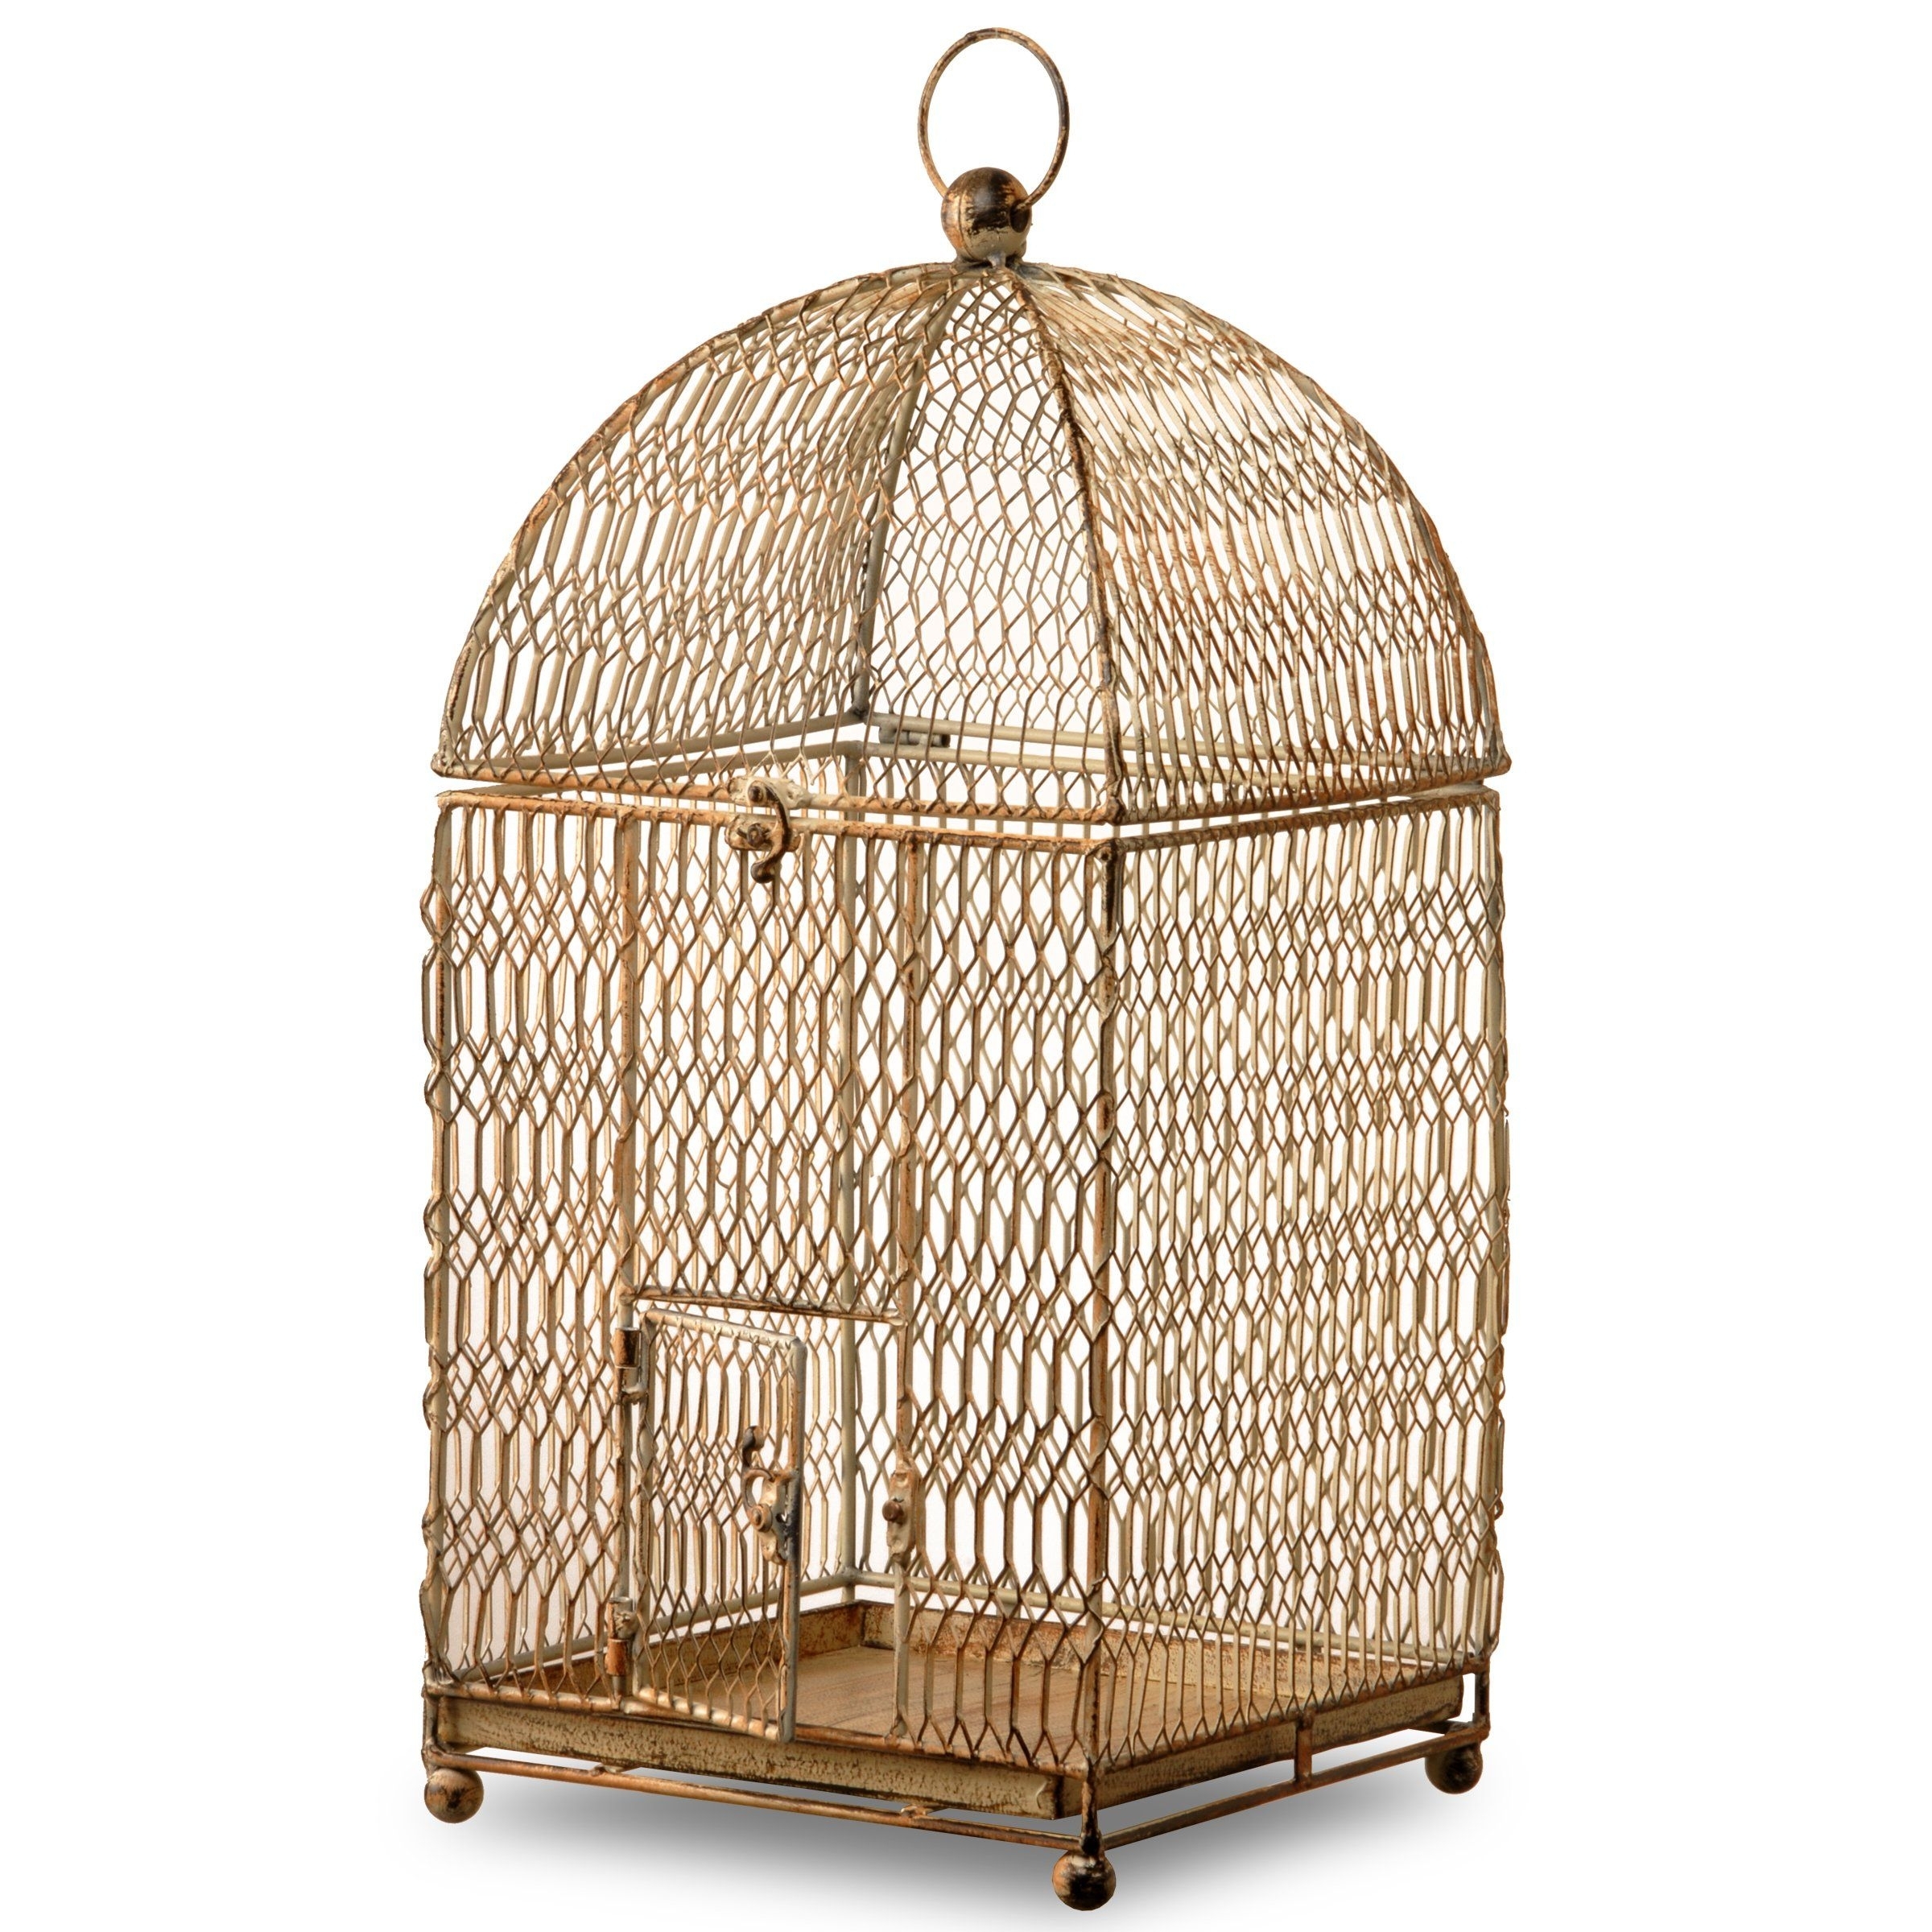 Hendryx Bird Cage - Foter  Bird cage decor, Vintage bird cage